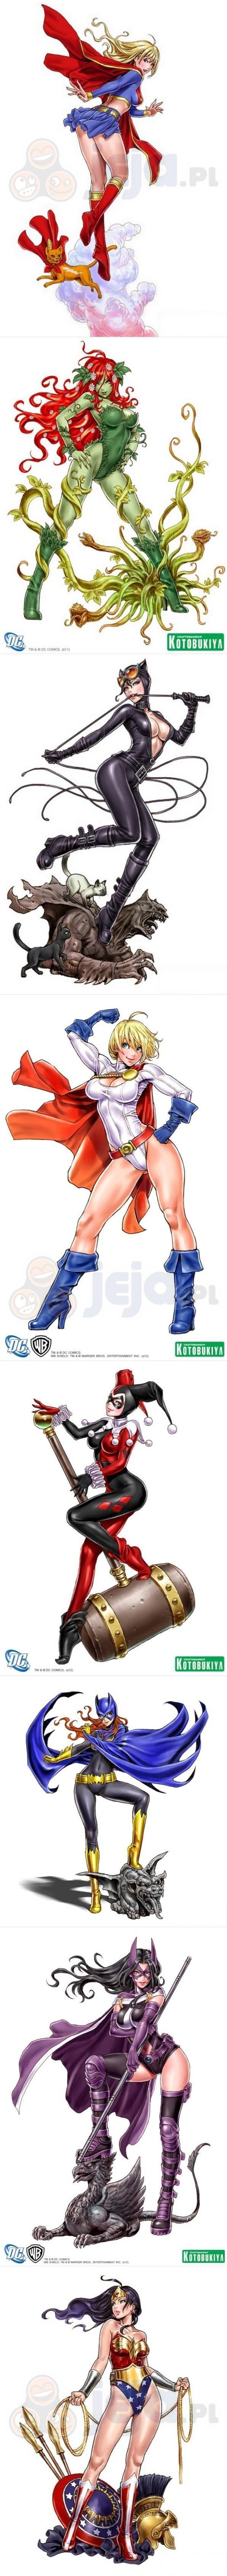 Dziewczyny z DC w wersji anime